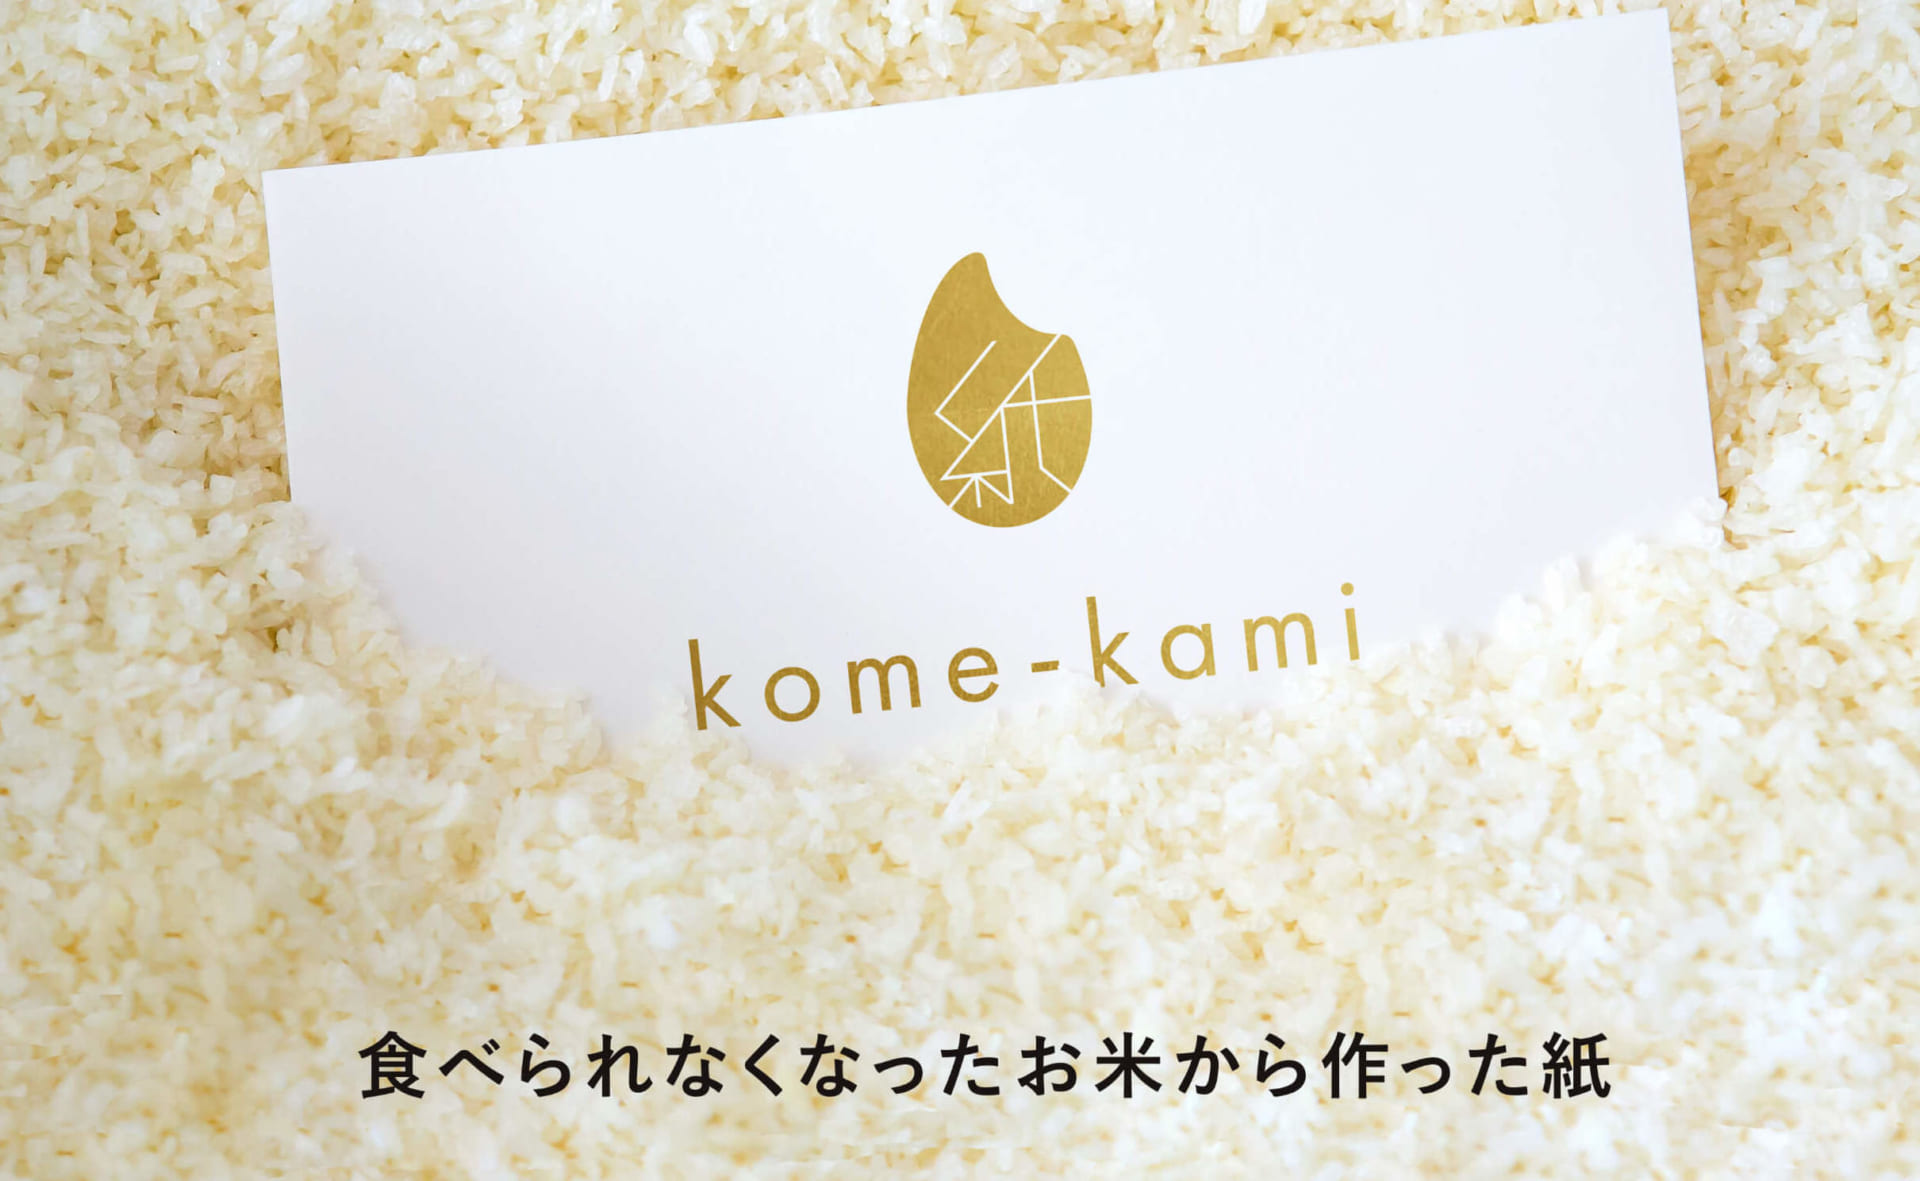 廃棄されるお米を活用した 新しい紙素材 Kome Kami Webマガジン Axis デザインのwebメディア